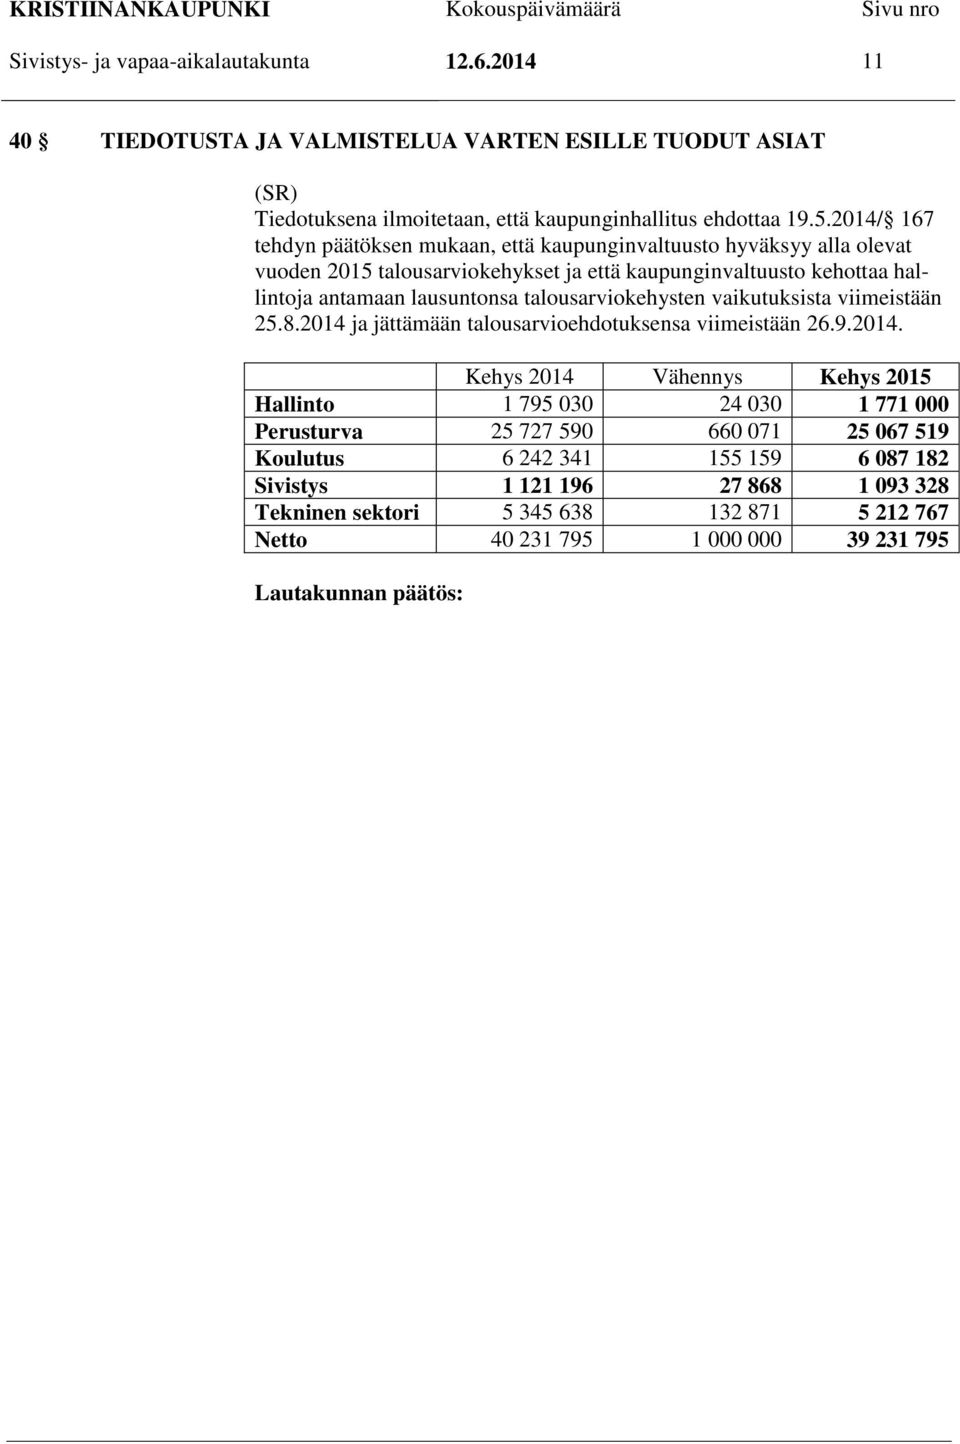 talousarviokehysten vaikutuksista viimeistään 25.8.2014 